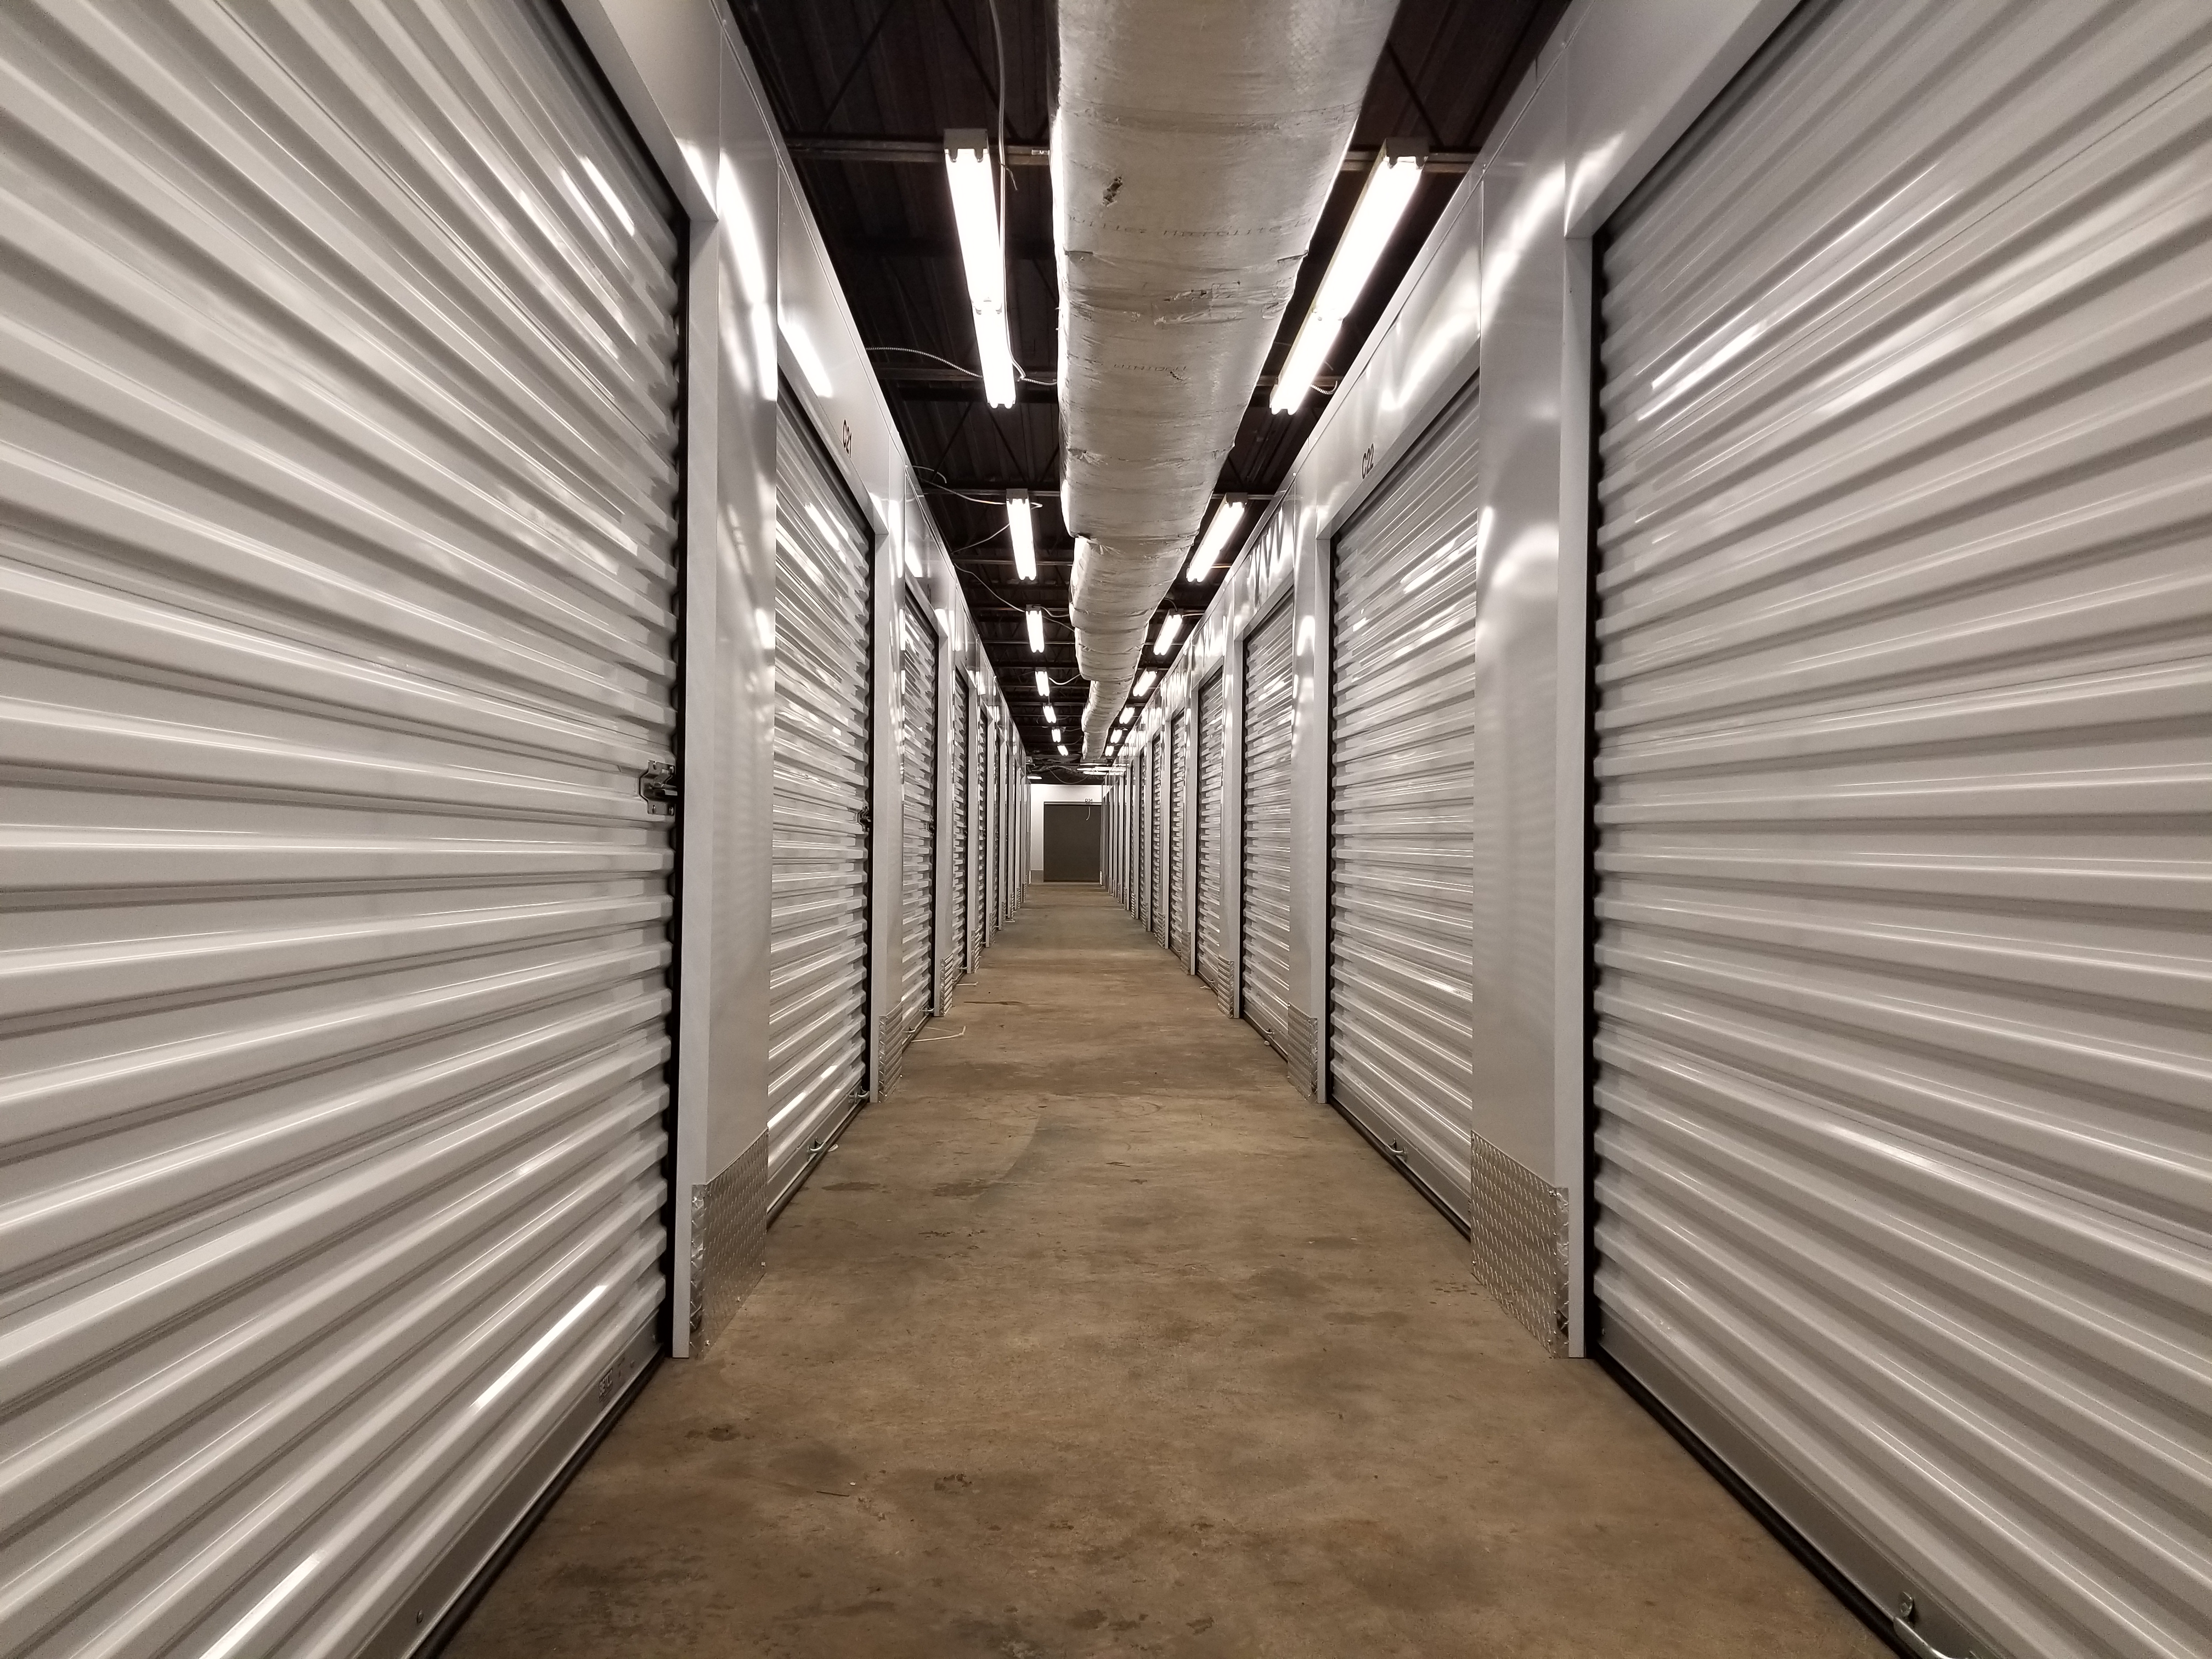 Interior Storage Units